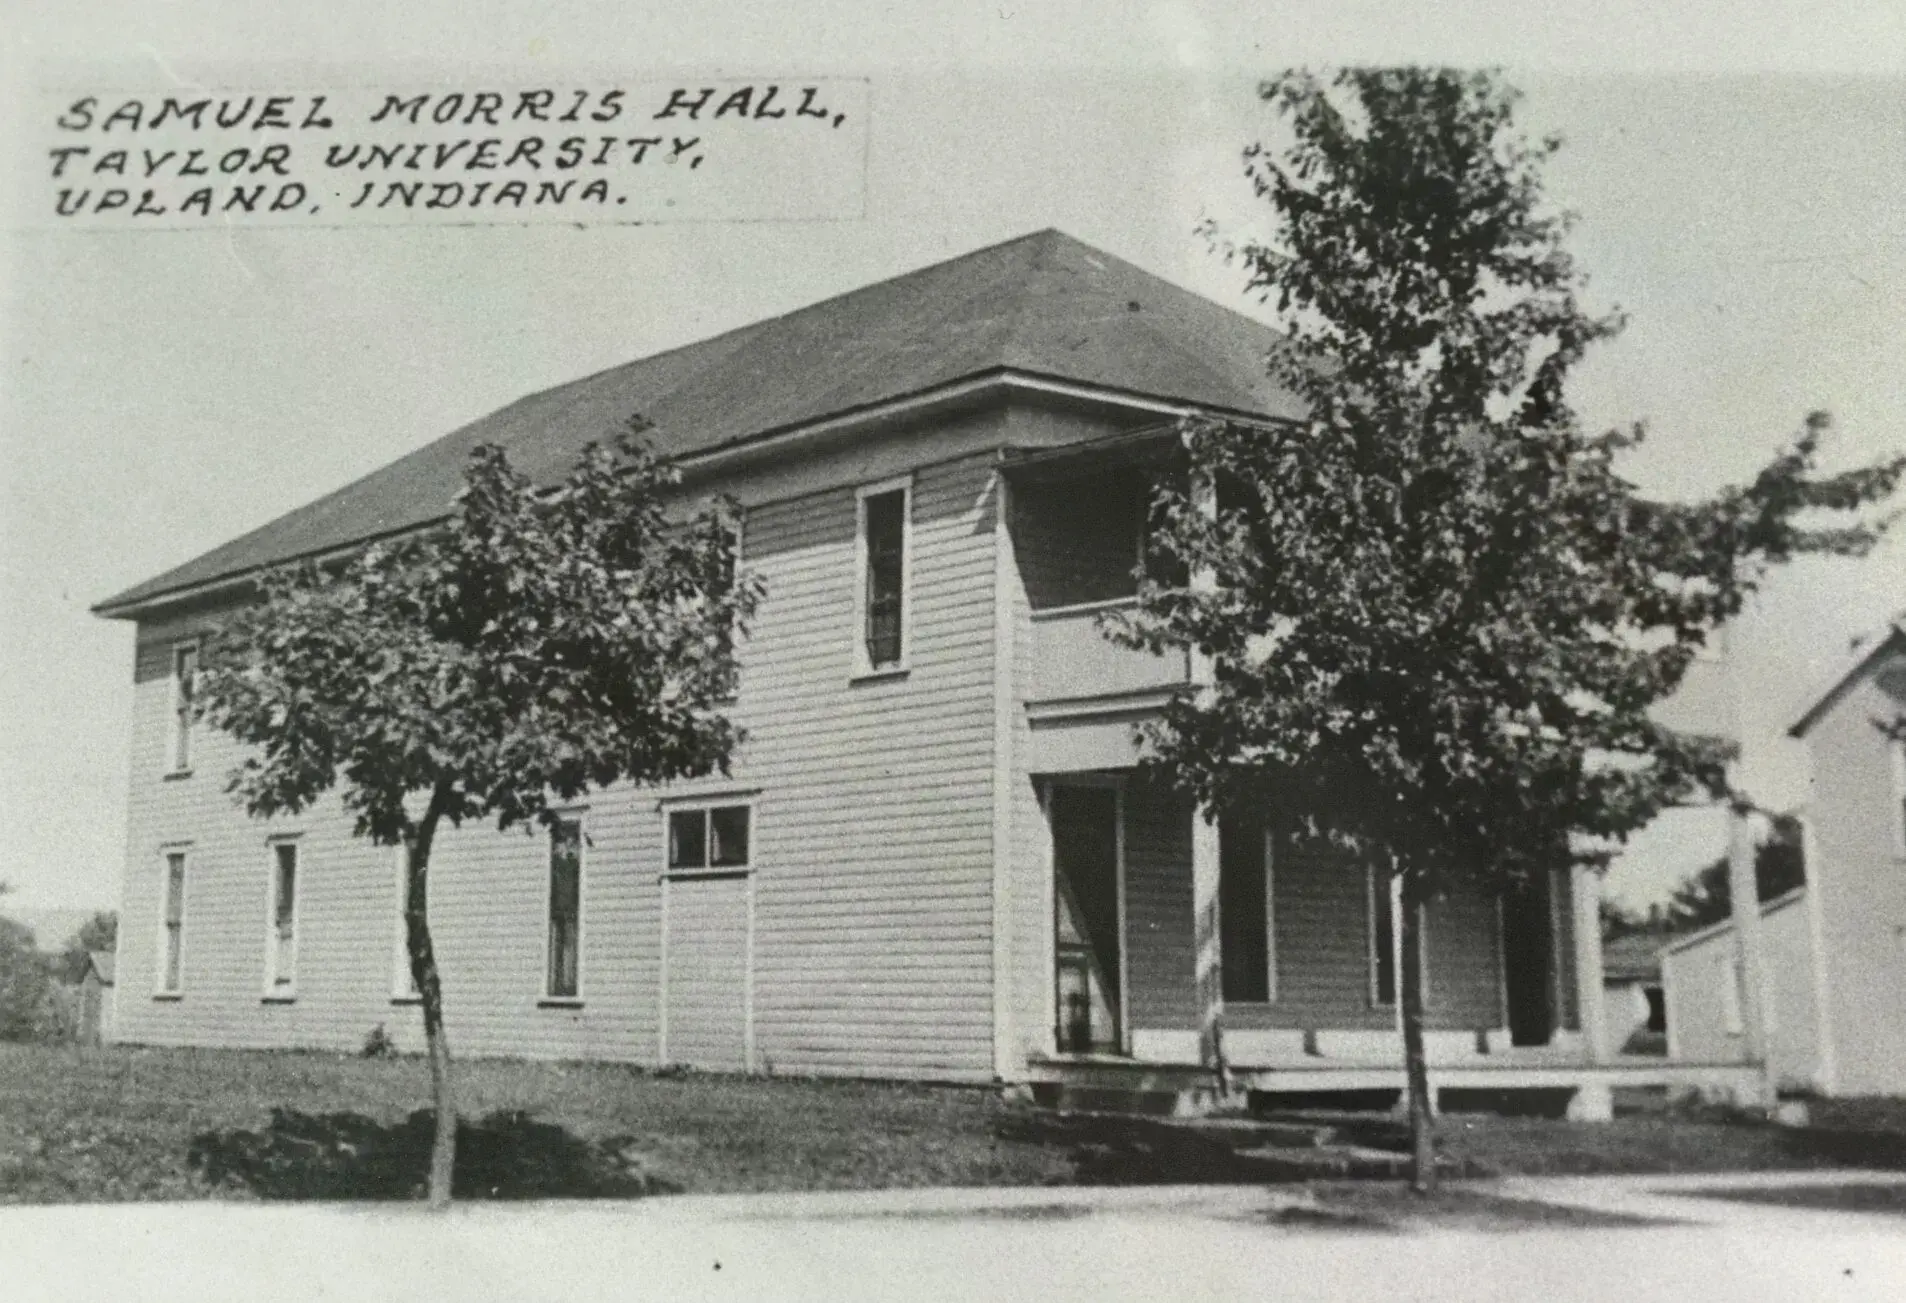 Old Samuel Morris Hall